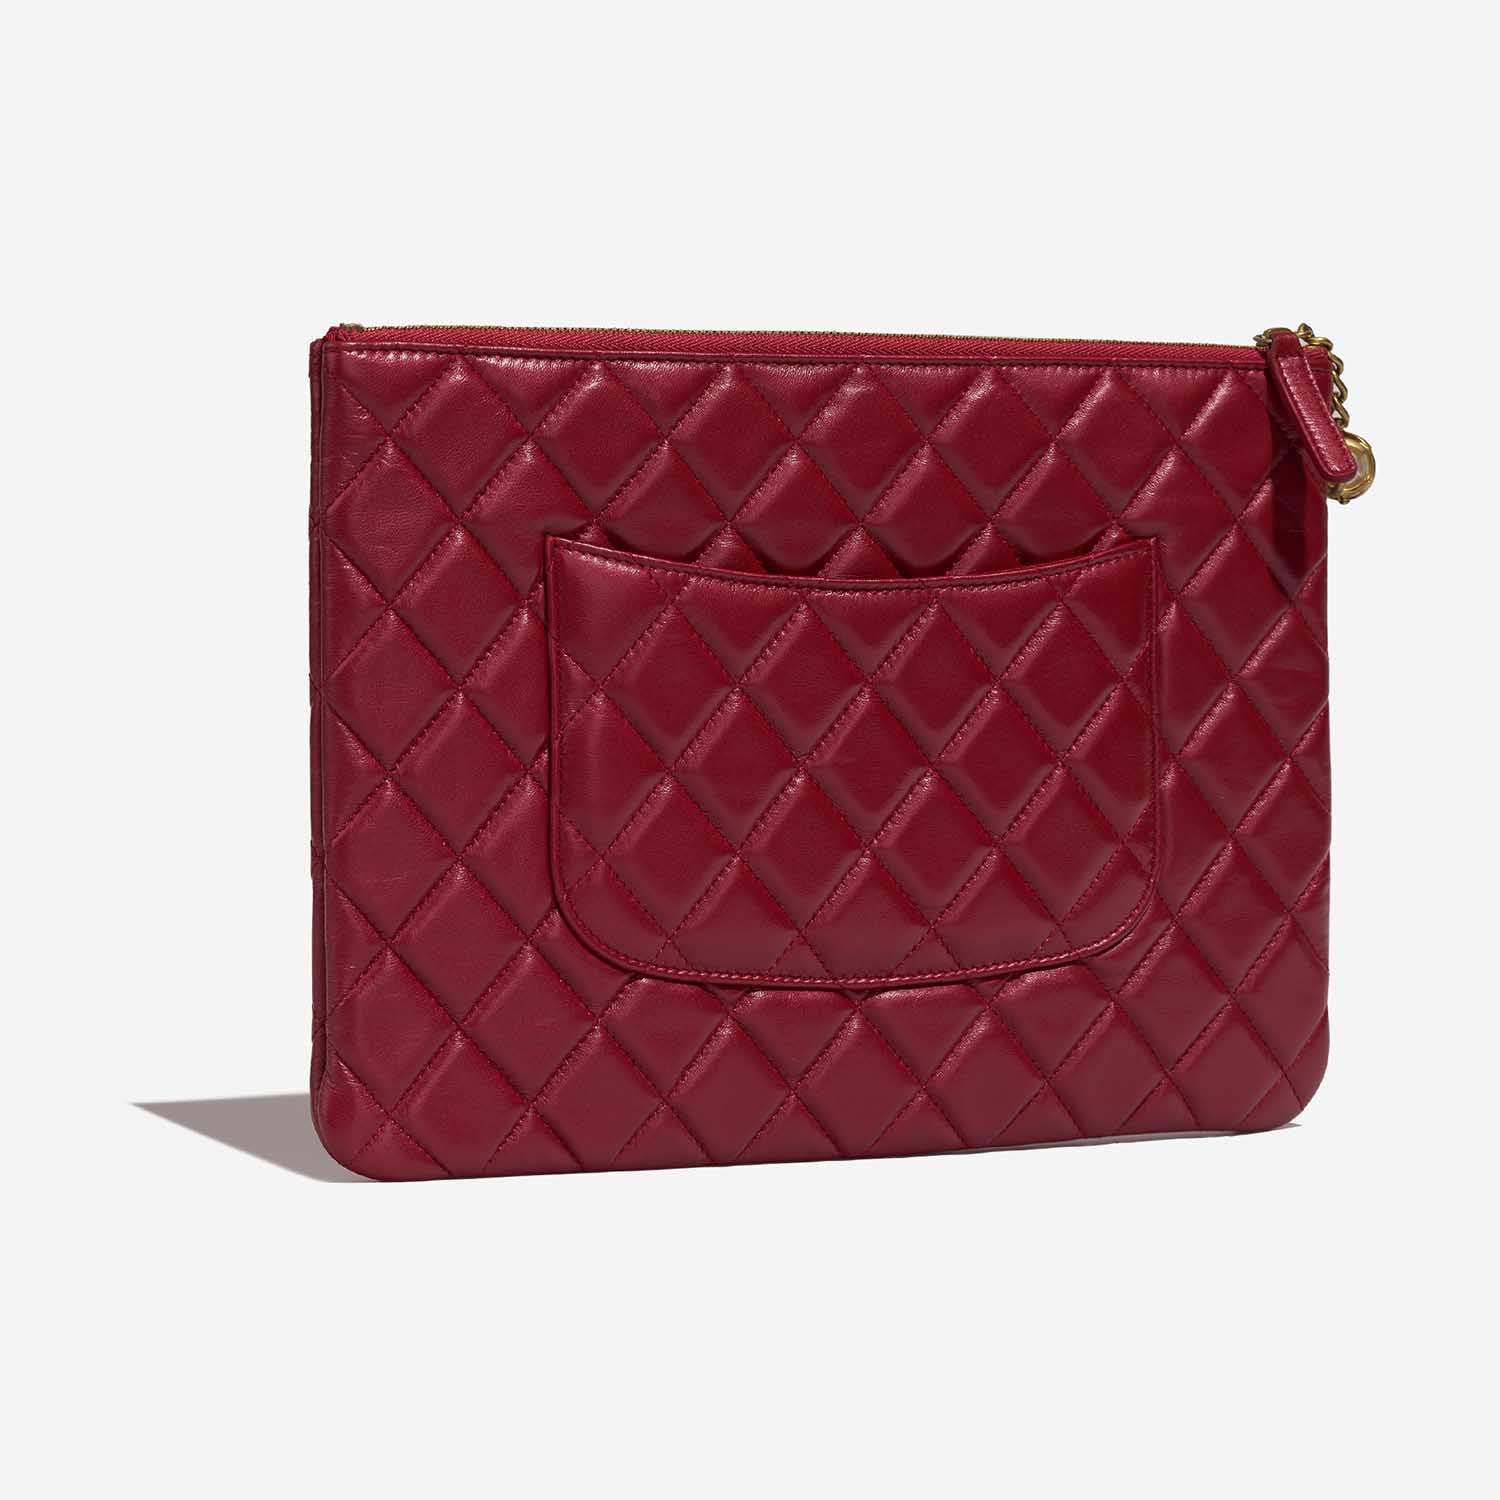 Chanel Timeless Clutch Rot 7SB S | Verkaufen Sie Ihre Designer-Tasche auf Saclab.com